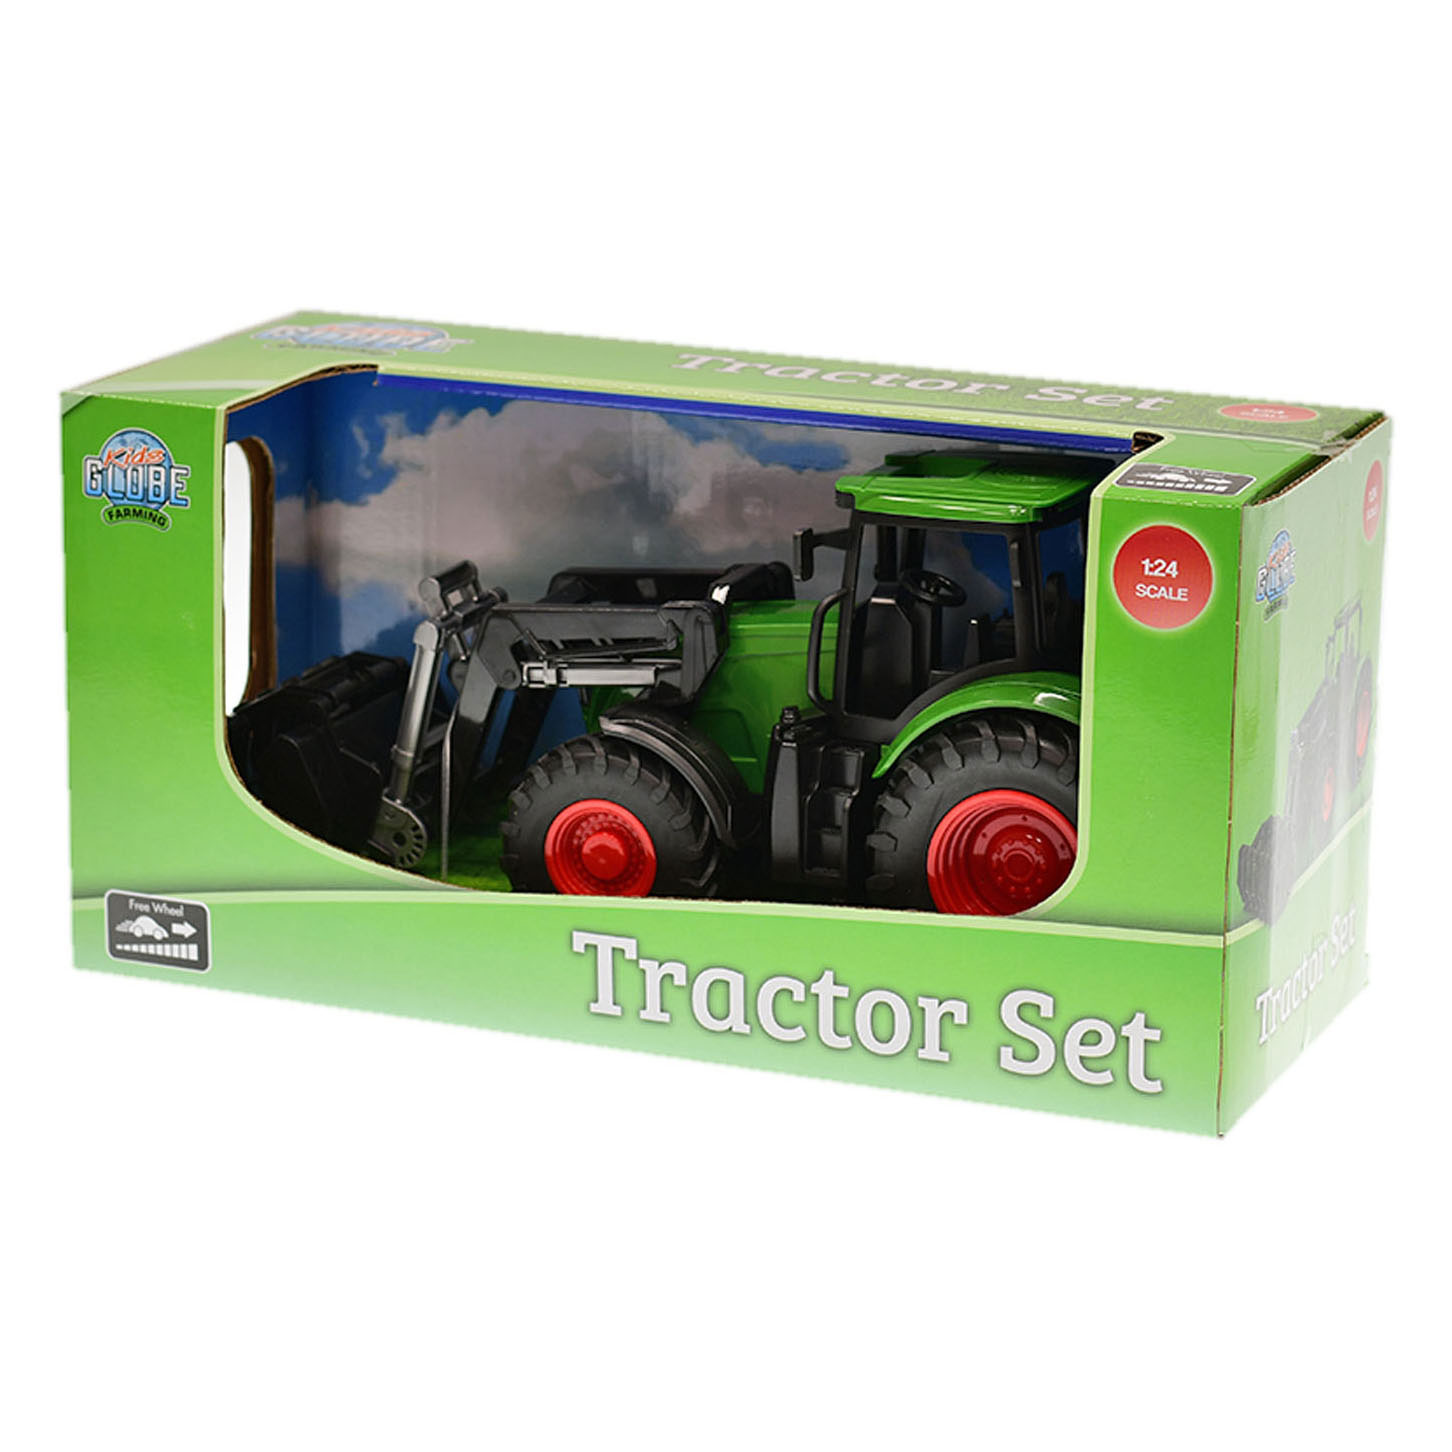 Kids Globe Tractor met Frontlader - Groen